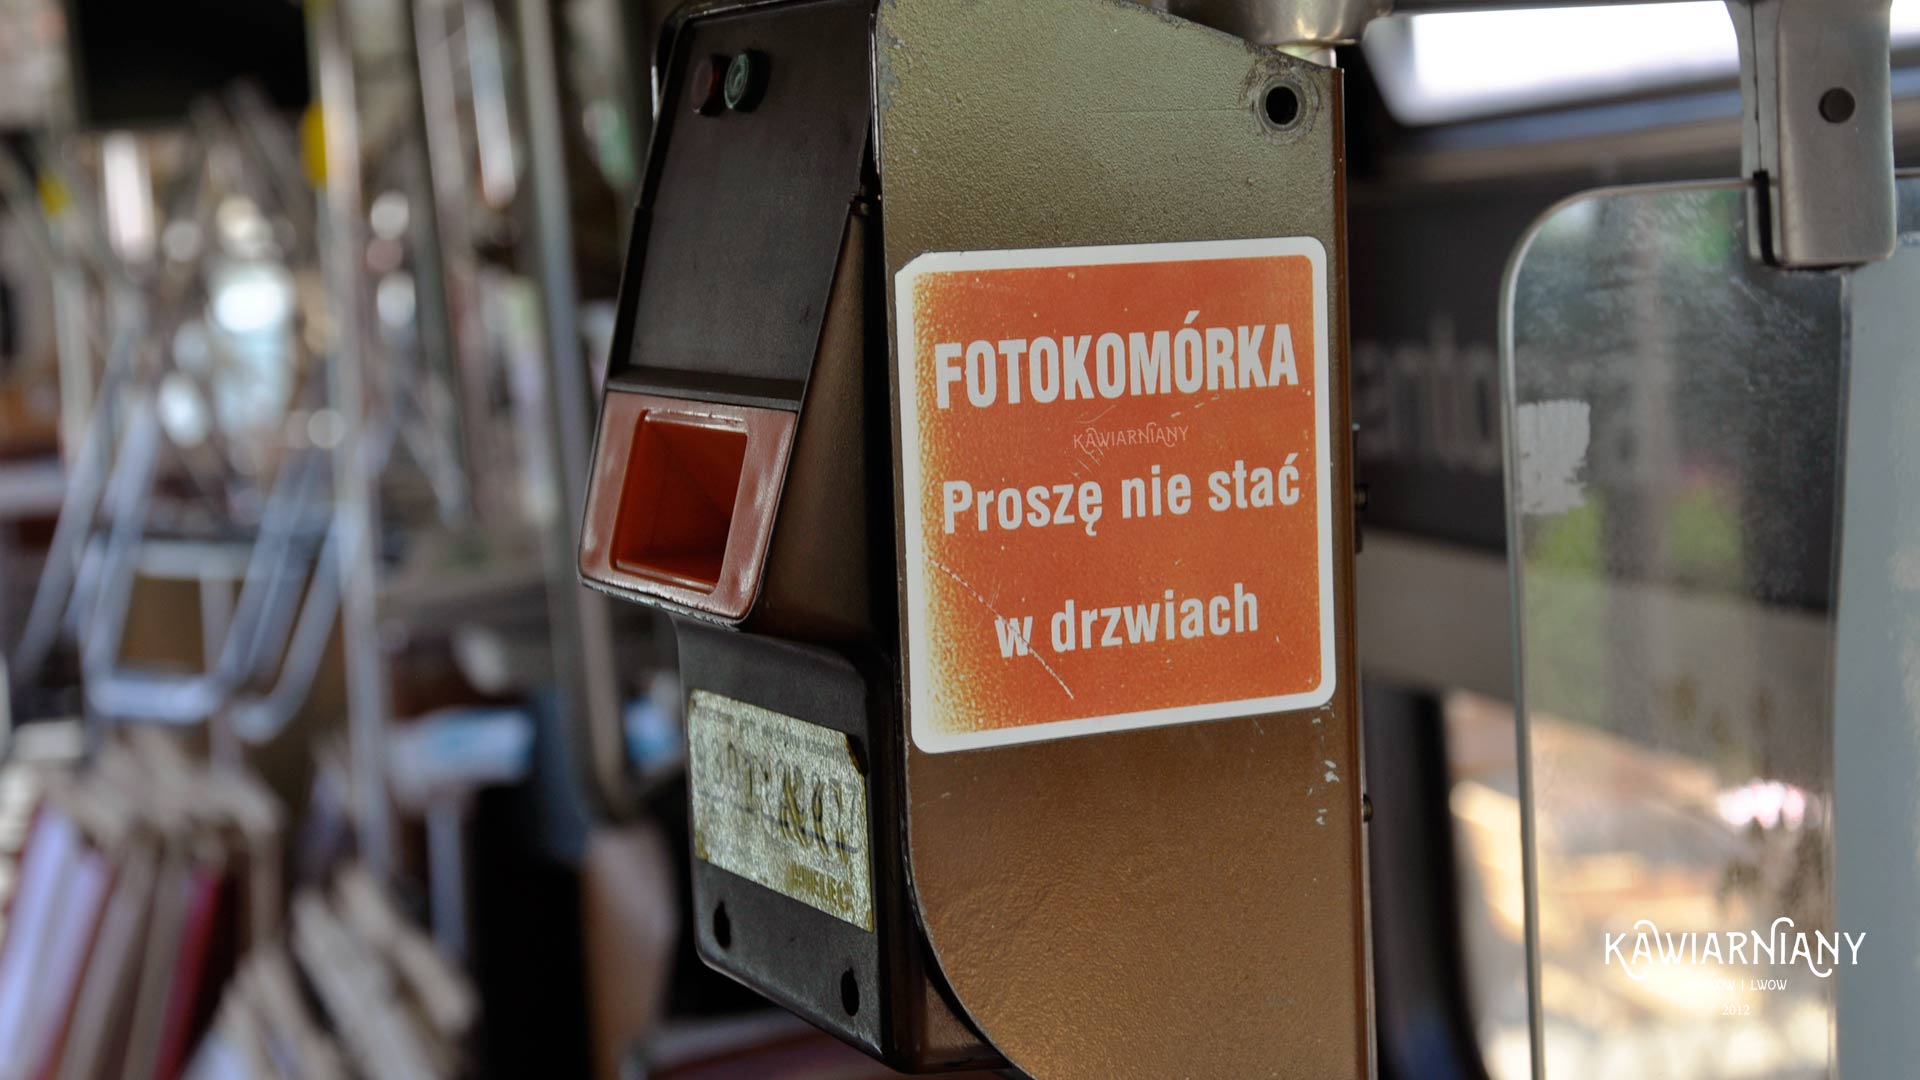 Pantograf Cafe - kawiarnia w tramwaju w Krakowie